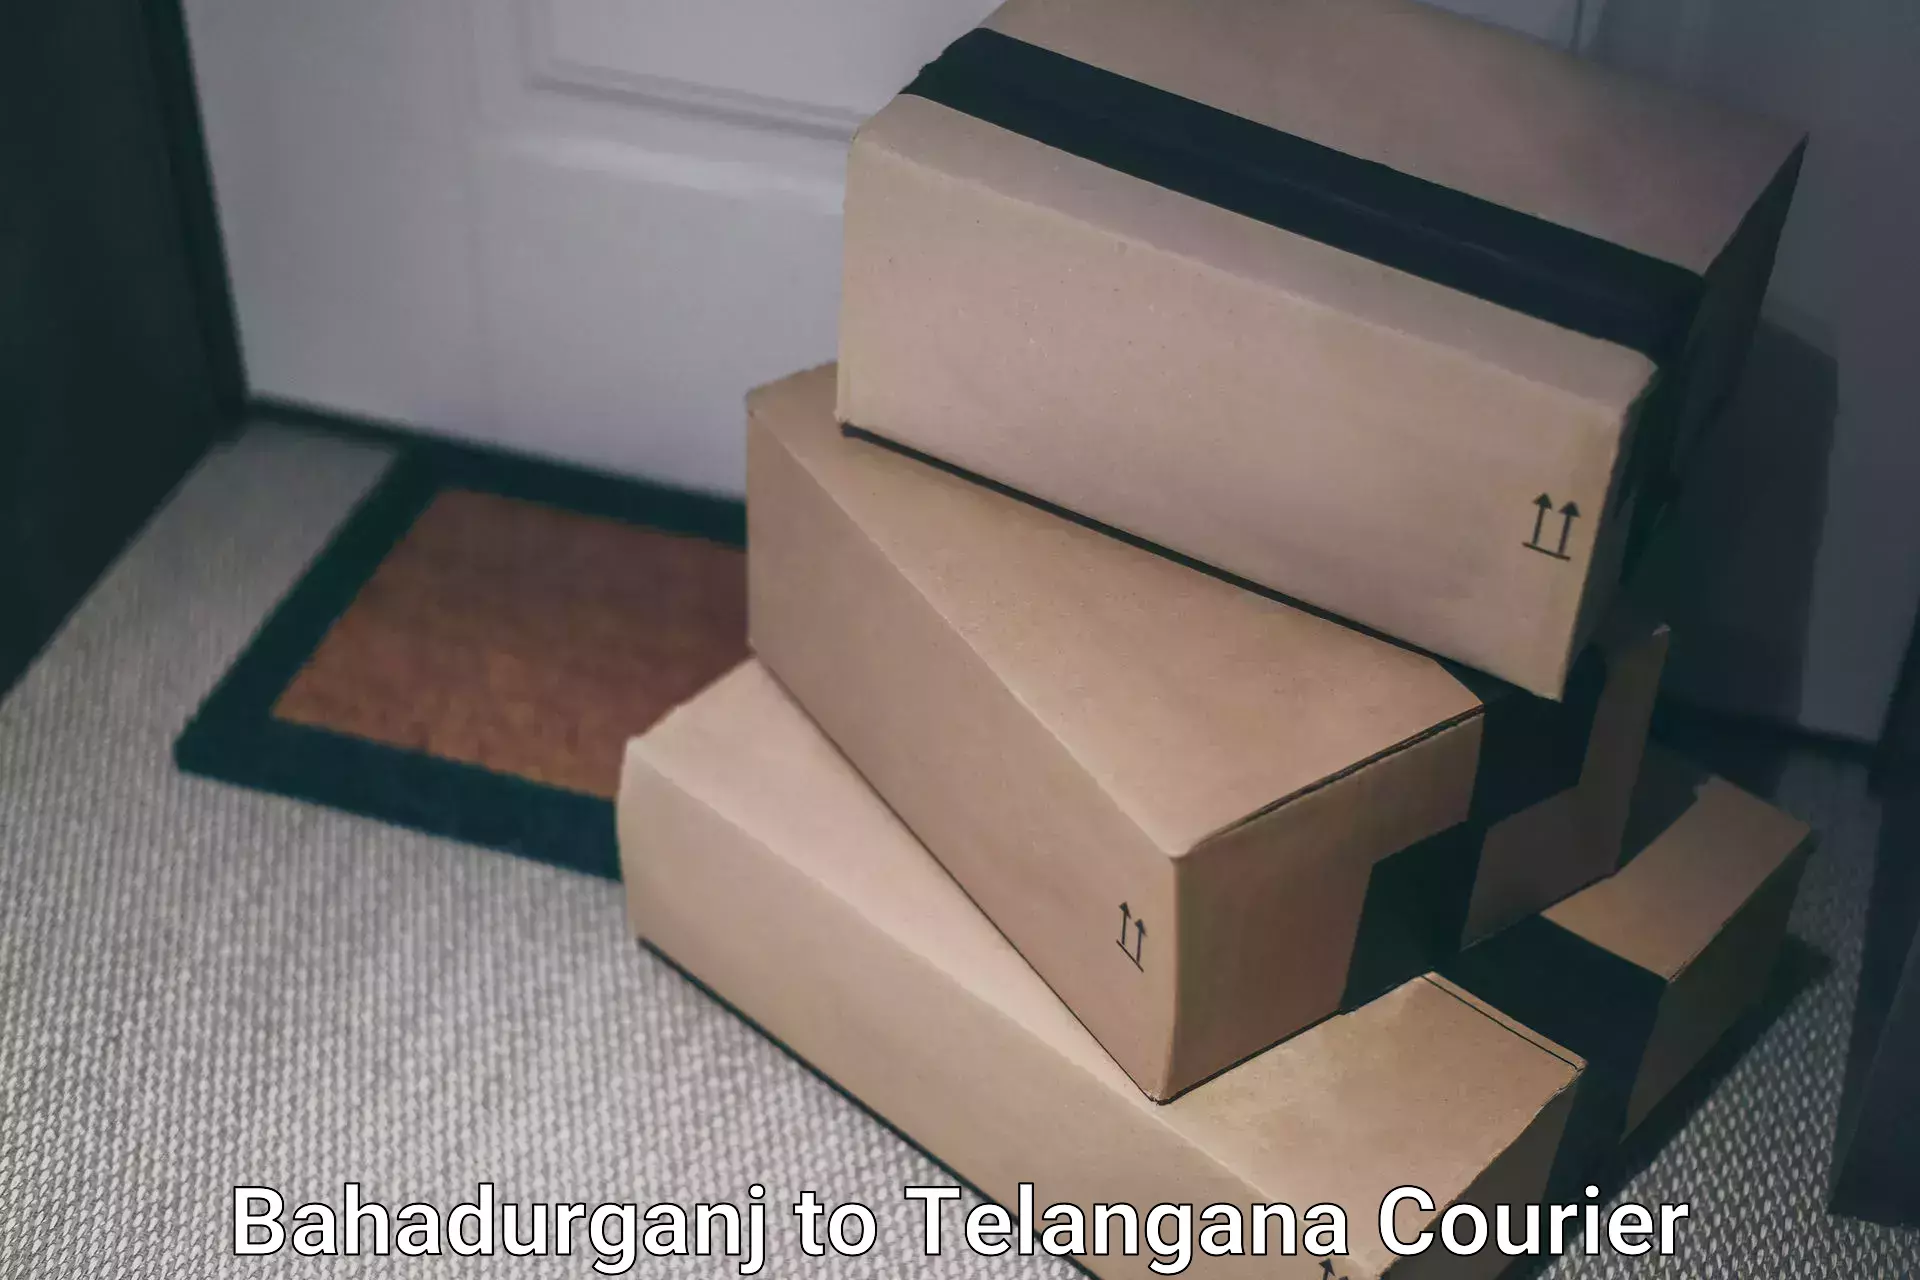 Customizable delivery plans Bahadurganj to Balanagar